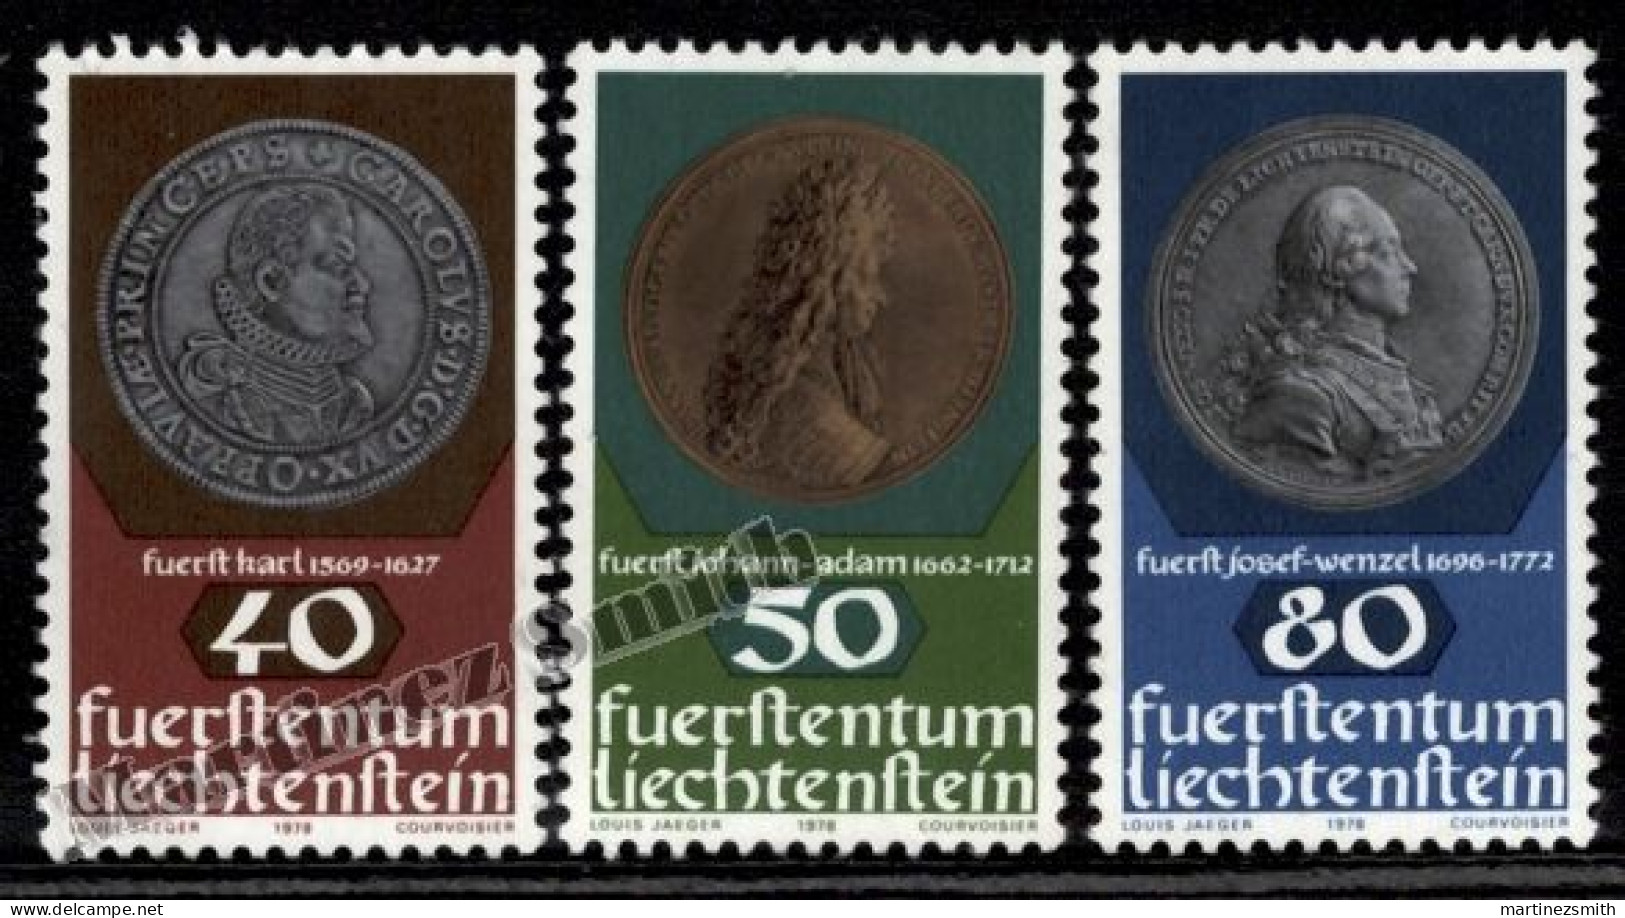 Liechtenstein 1978 Yvert 651-53, Coins & Medals (II), Coins On Stamps - MNH - Ungebraucht